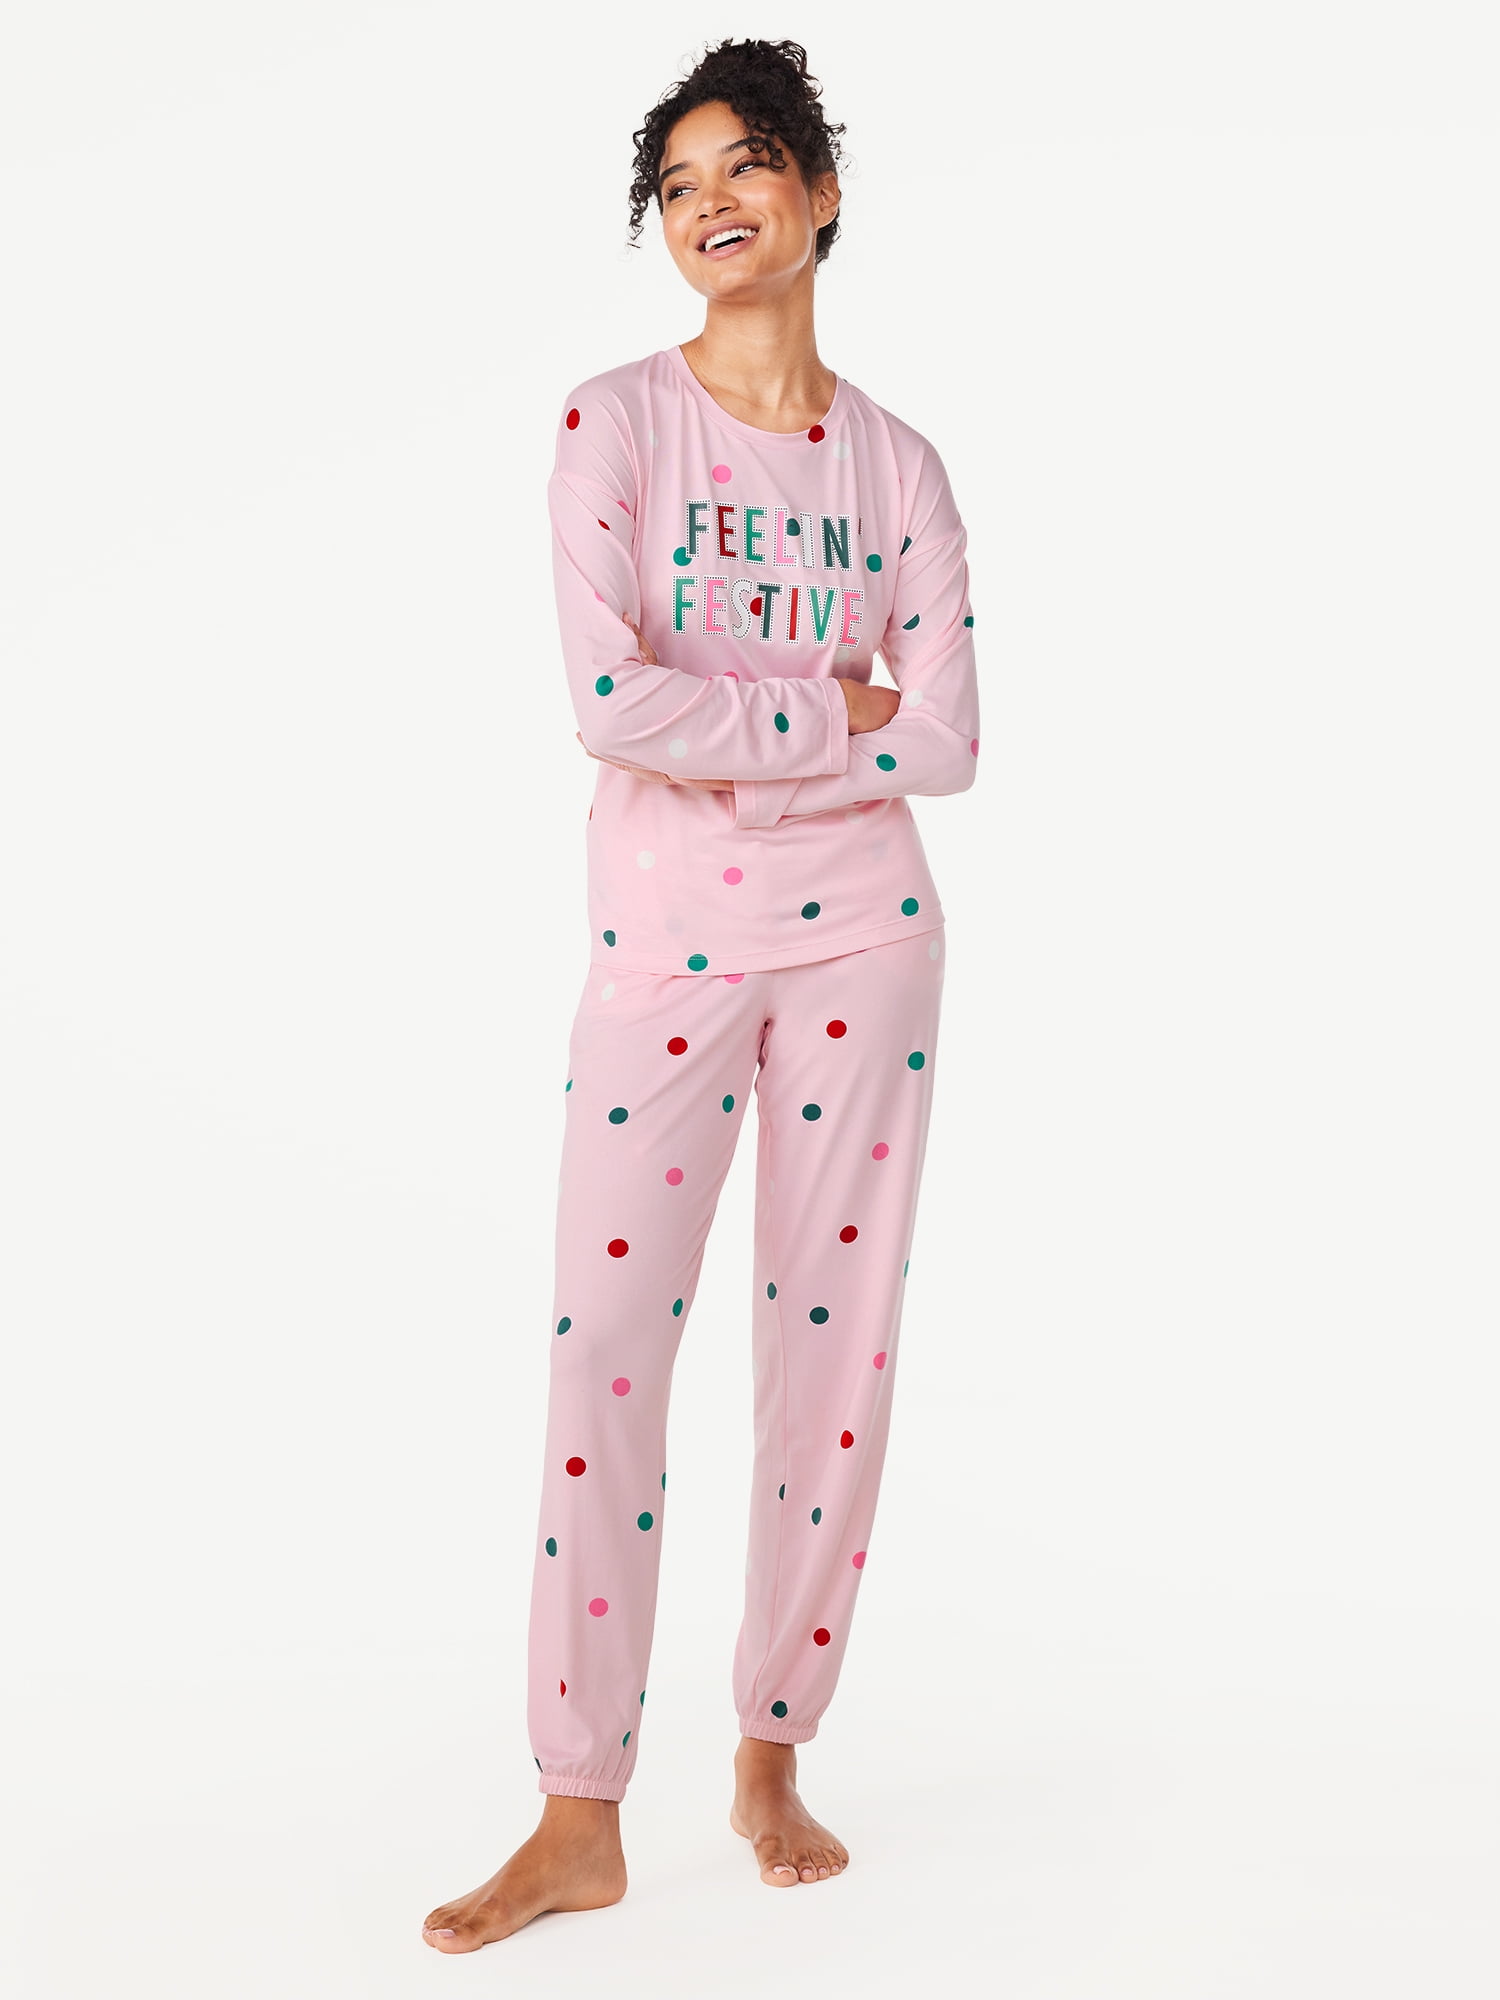 Joyspun Women's Long Sleeve Tee and Joggers, 2-Piece Pajama Set